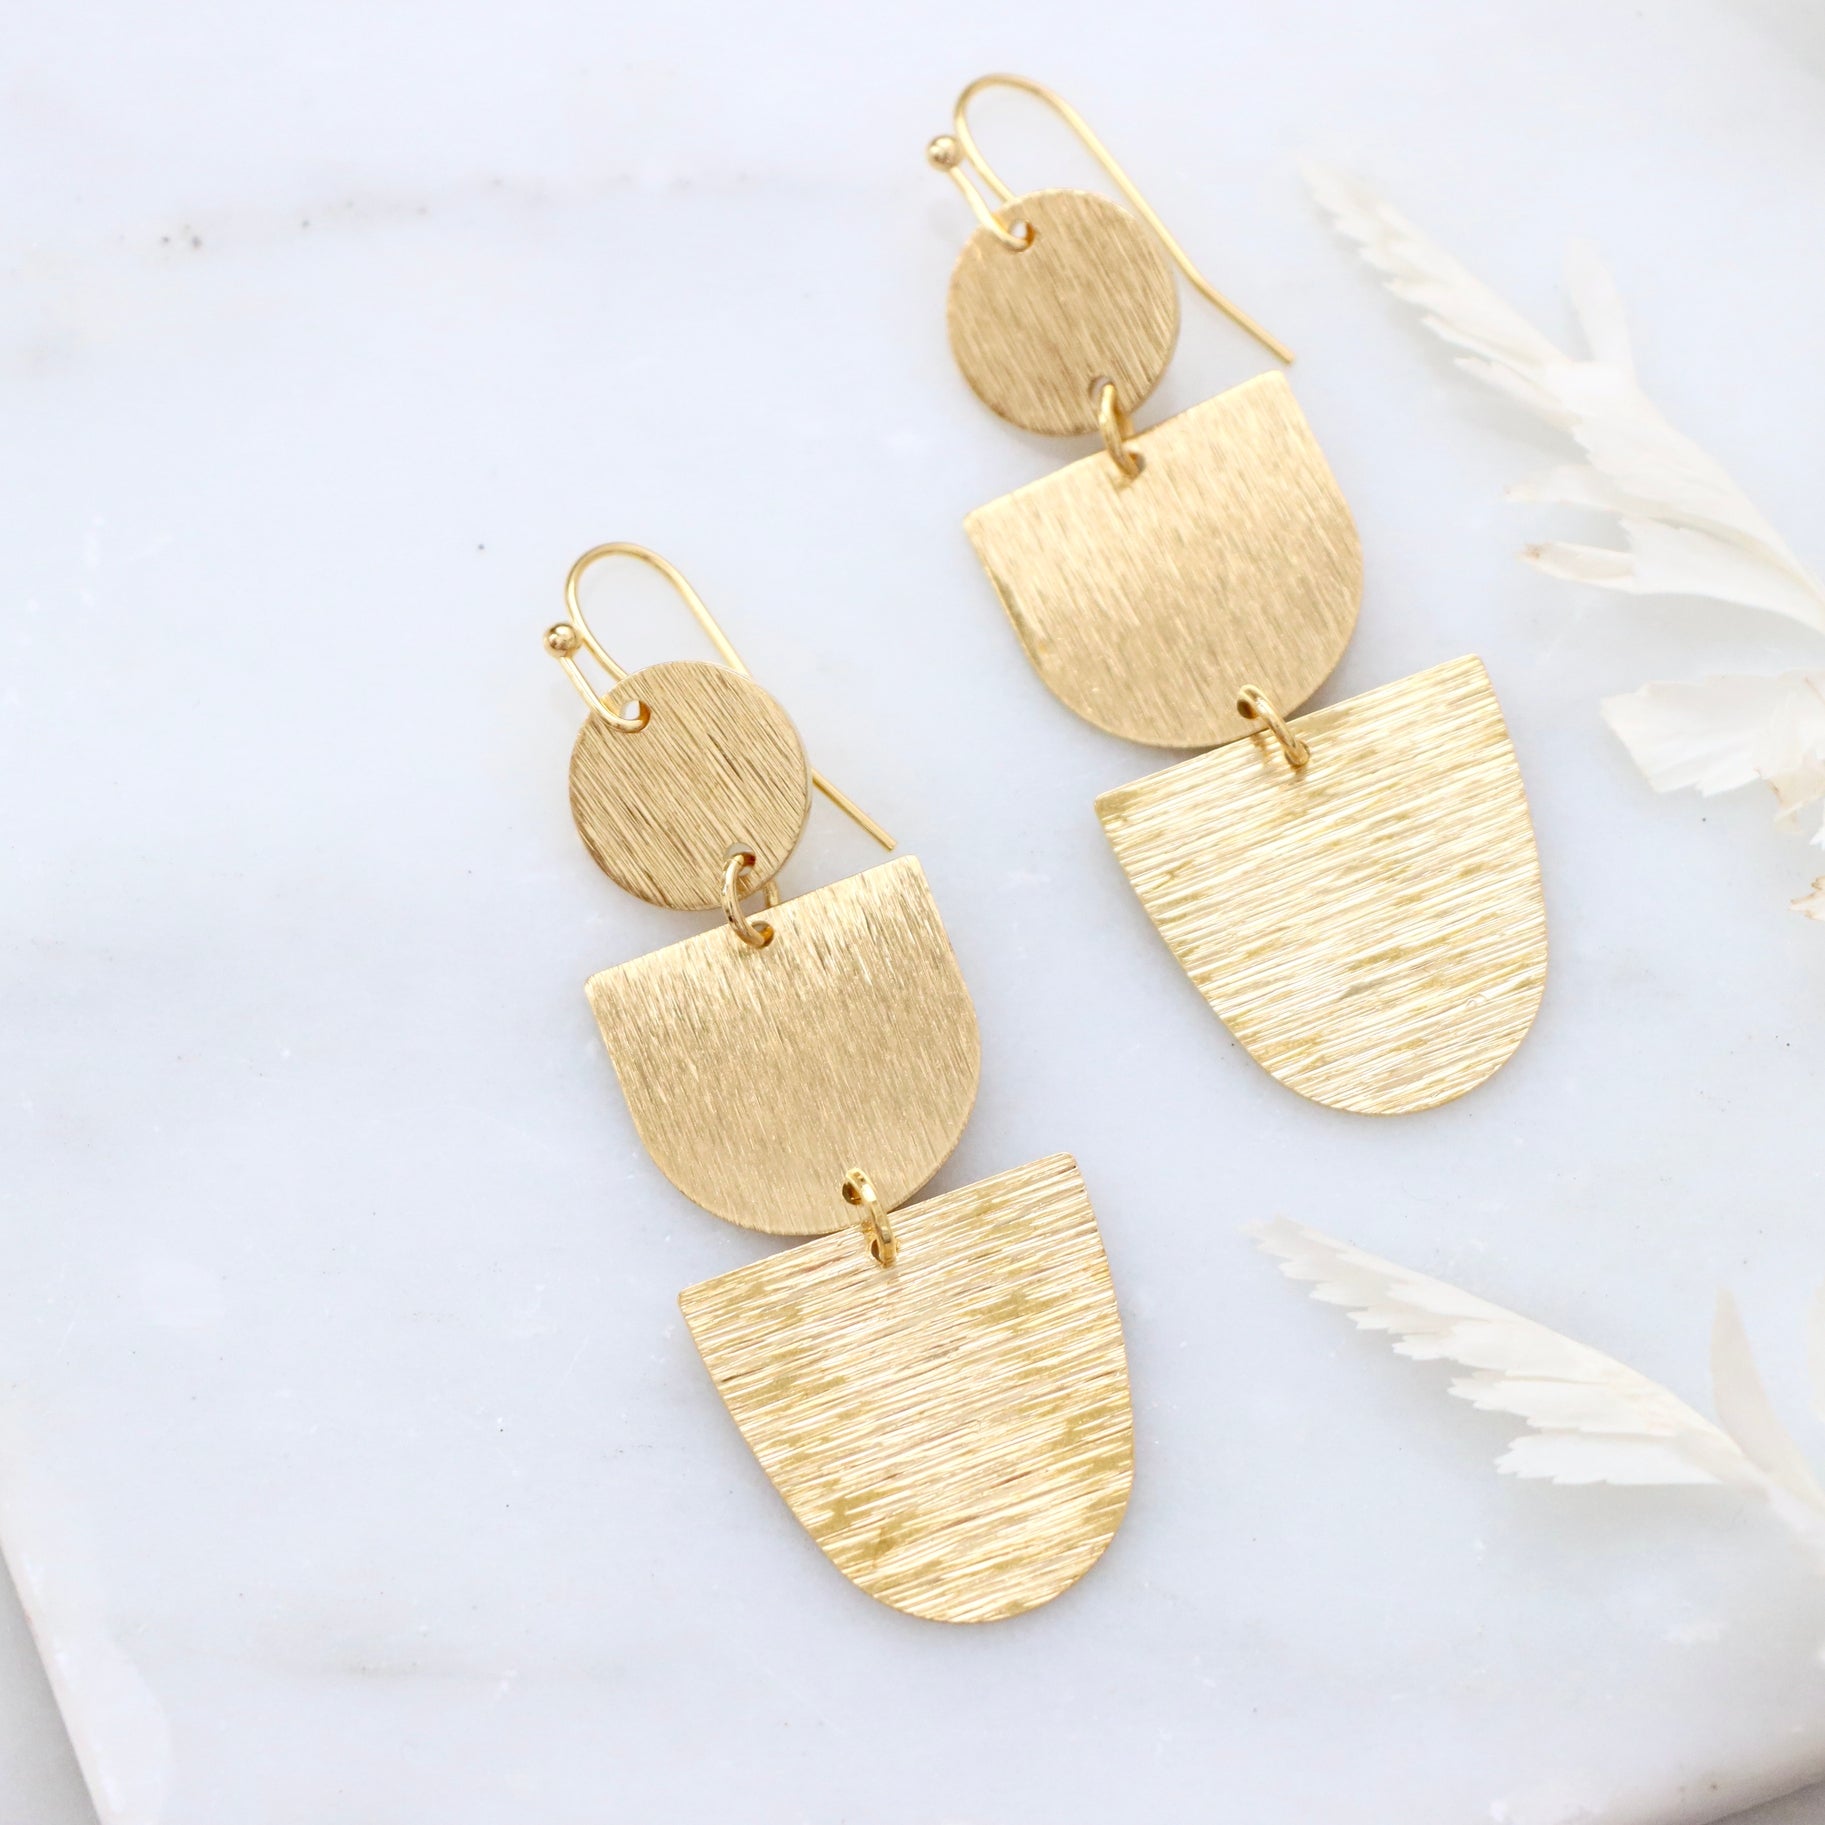 Brush Gold Earrings - Triple